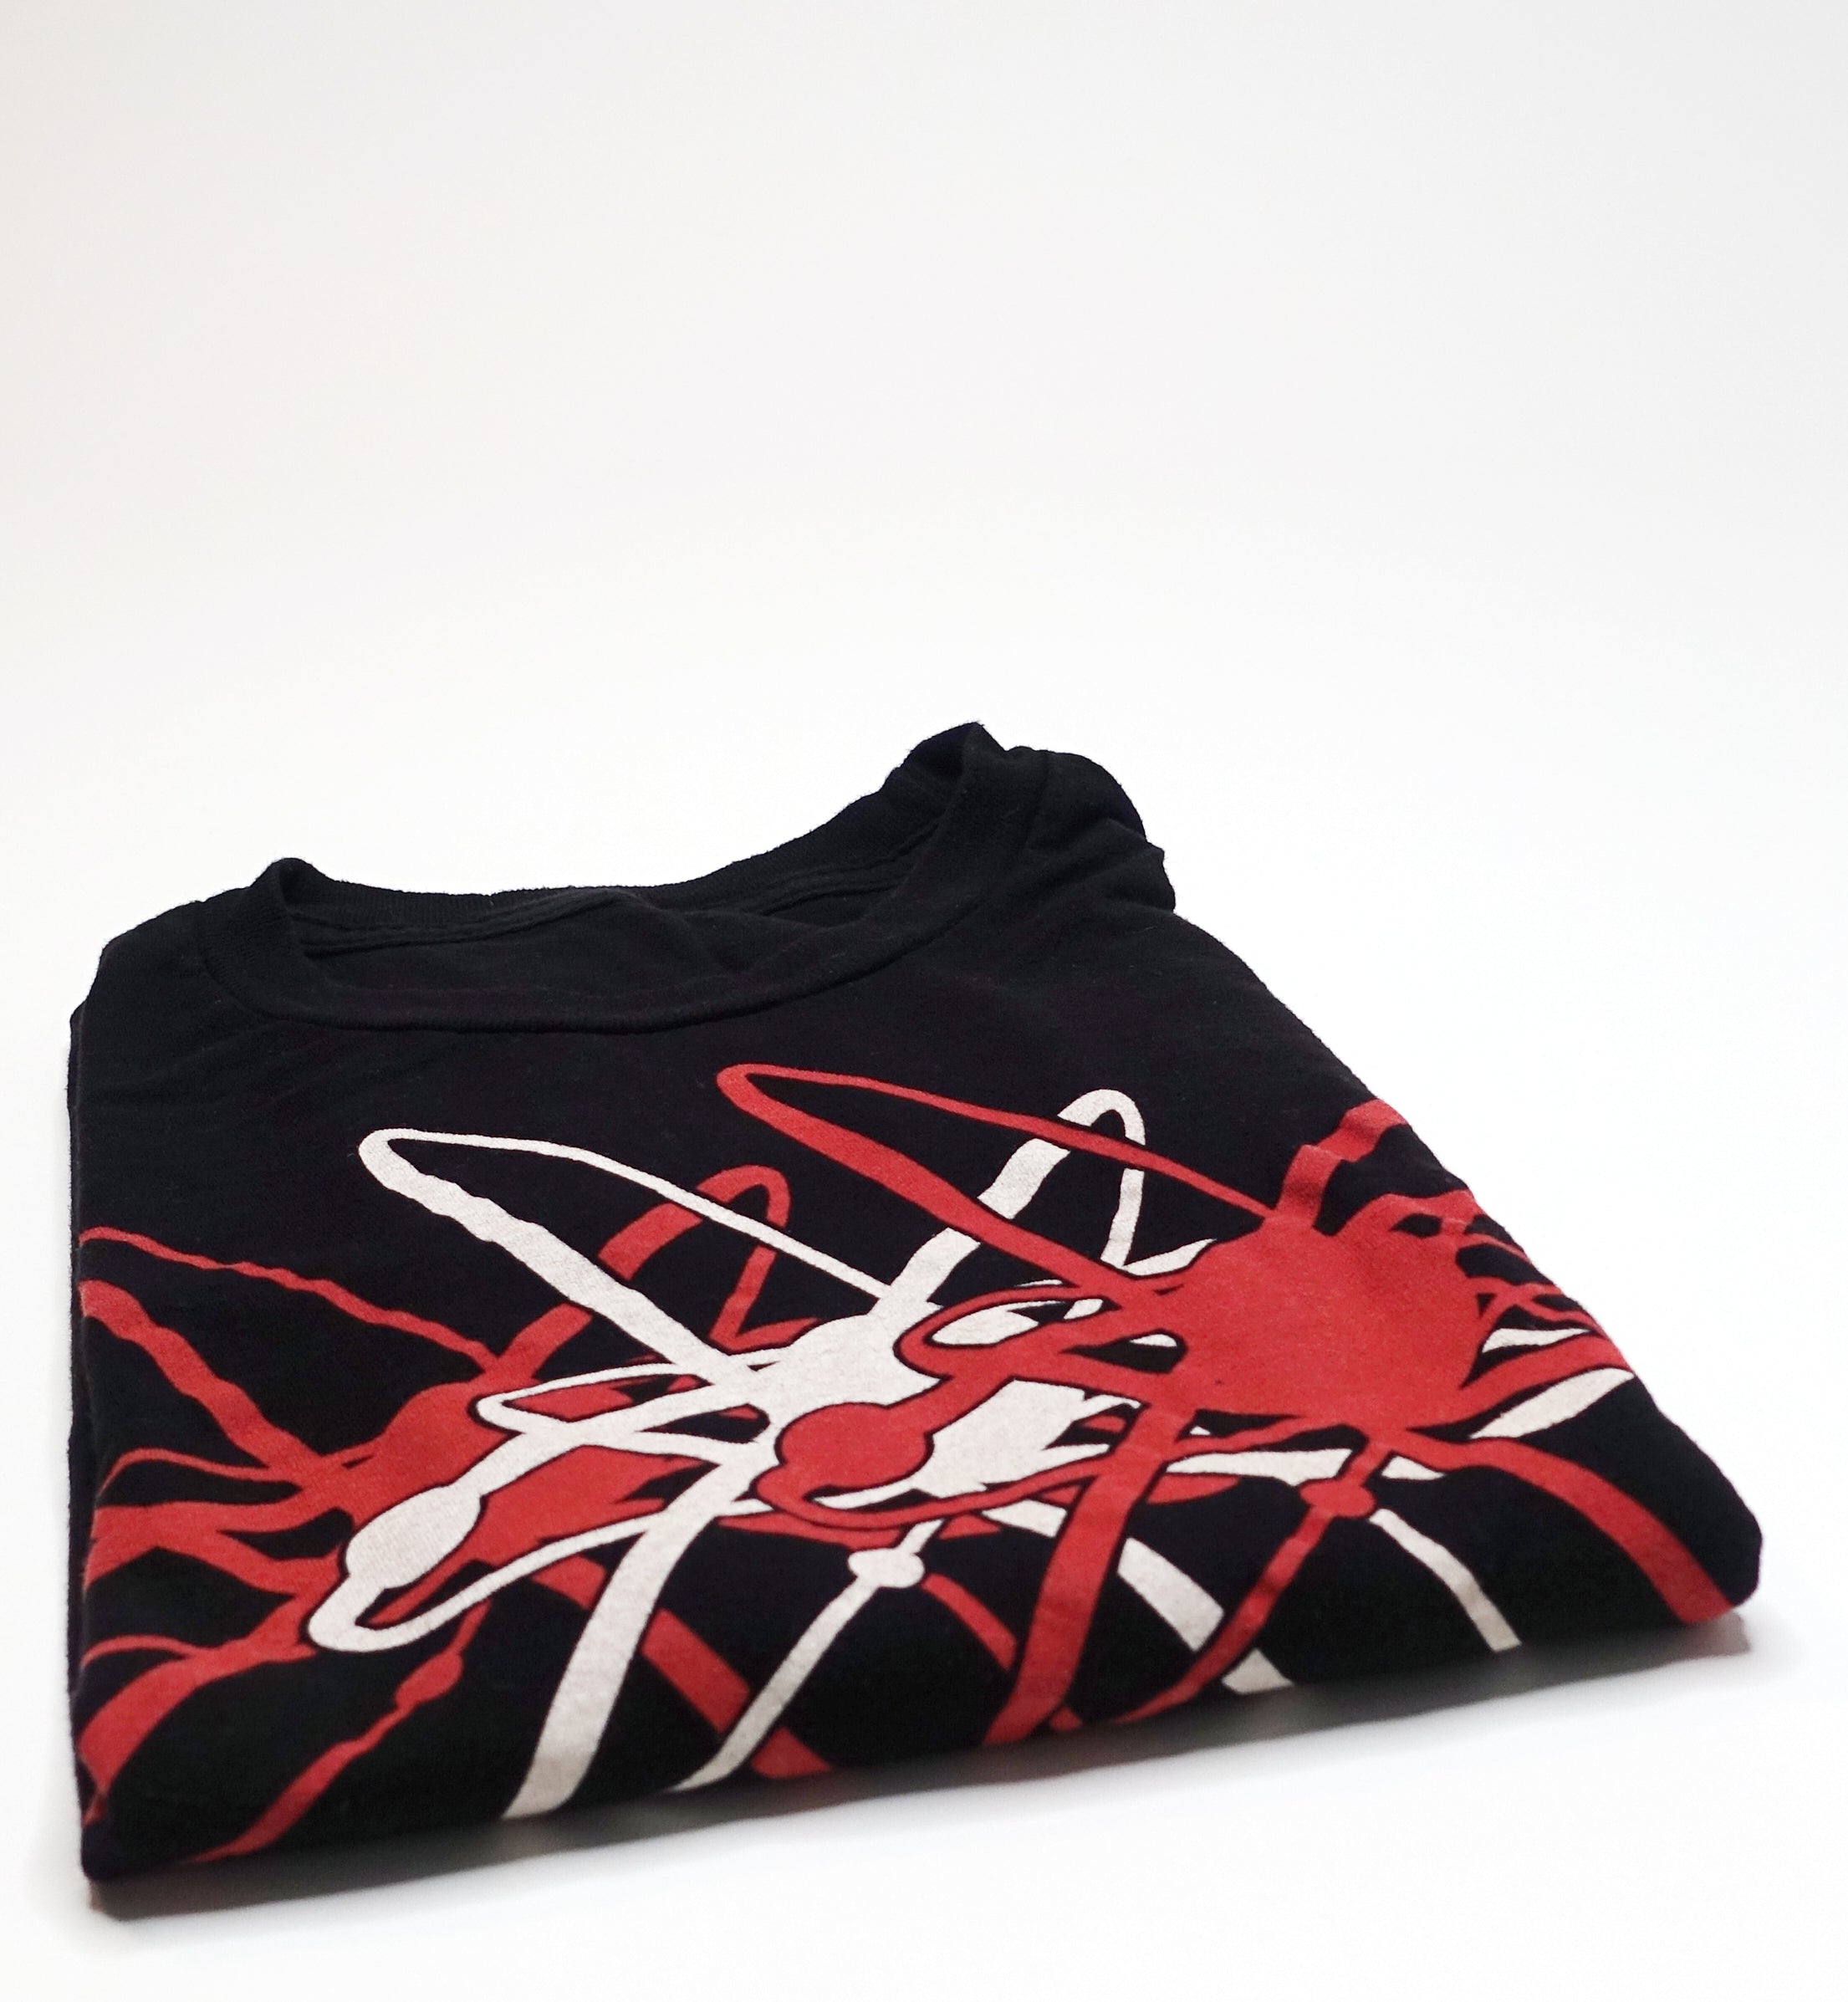 Strung Out ‎– Transmission.Alpha.Delta 2014 Tour Shirt Size XL